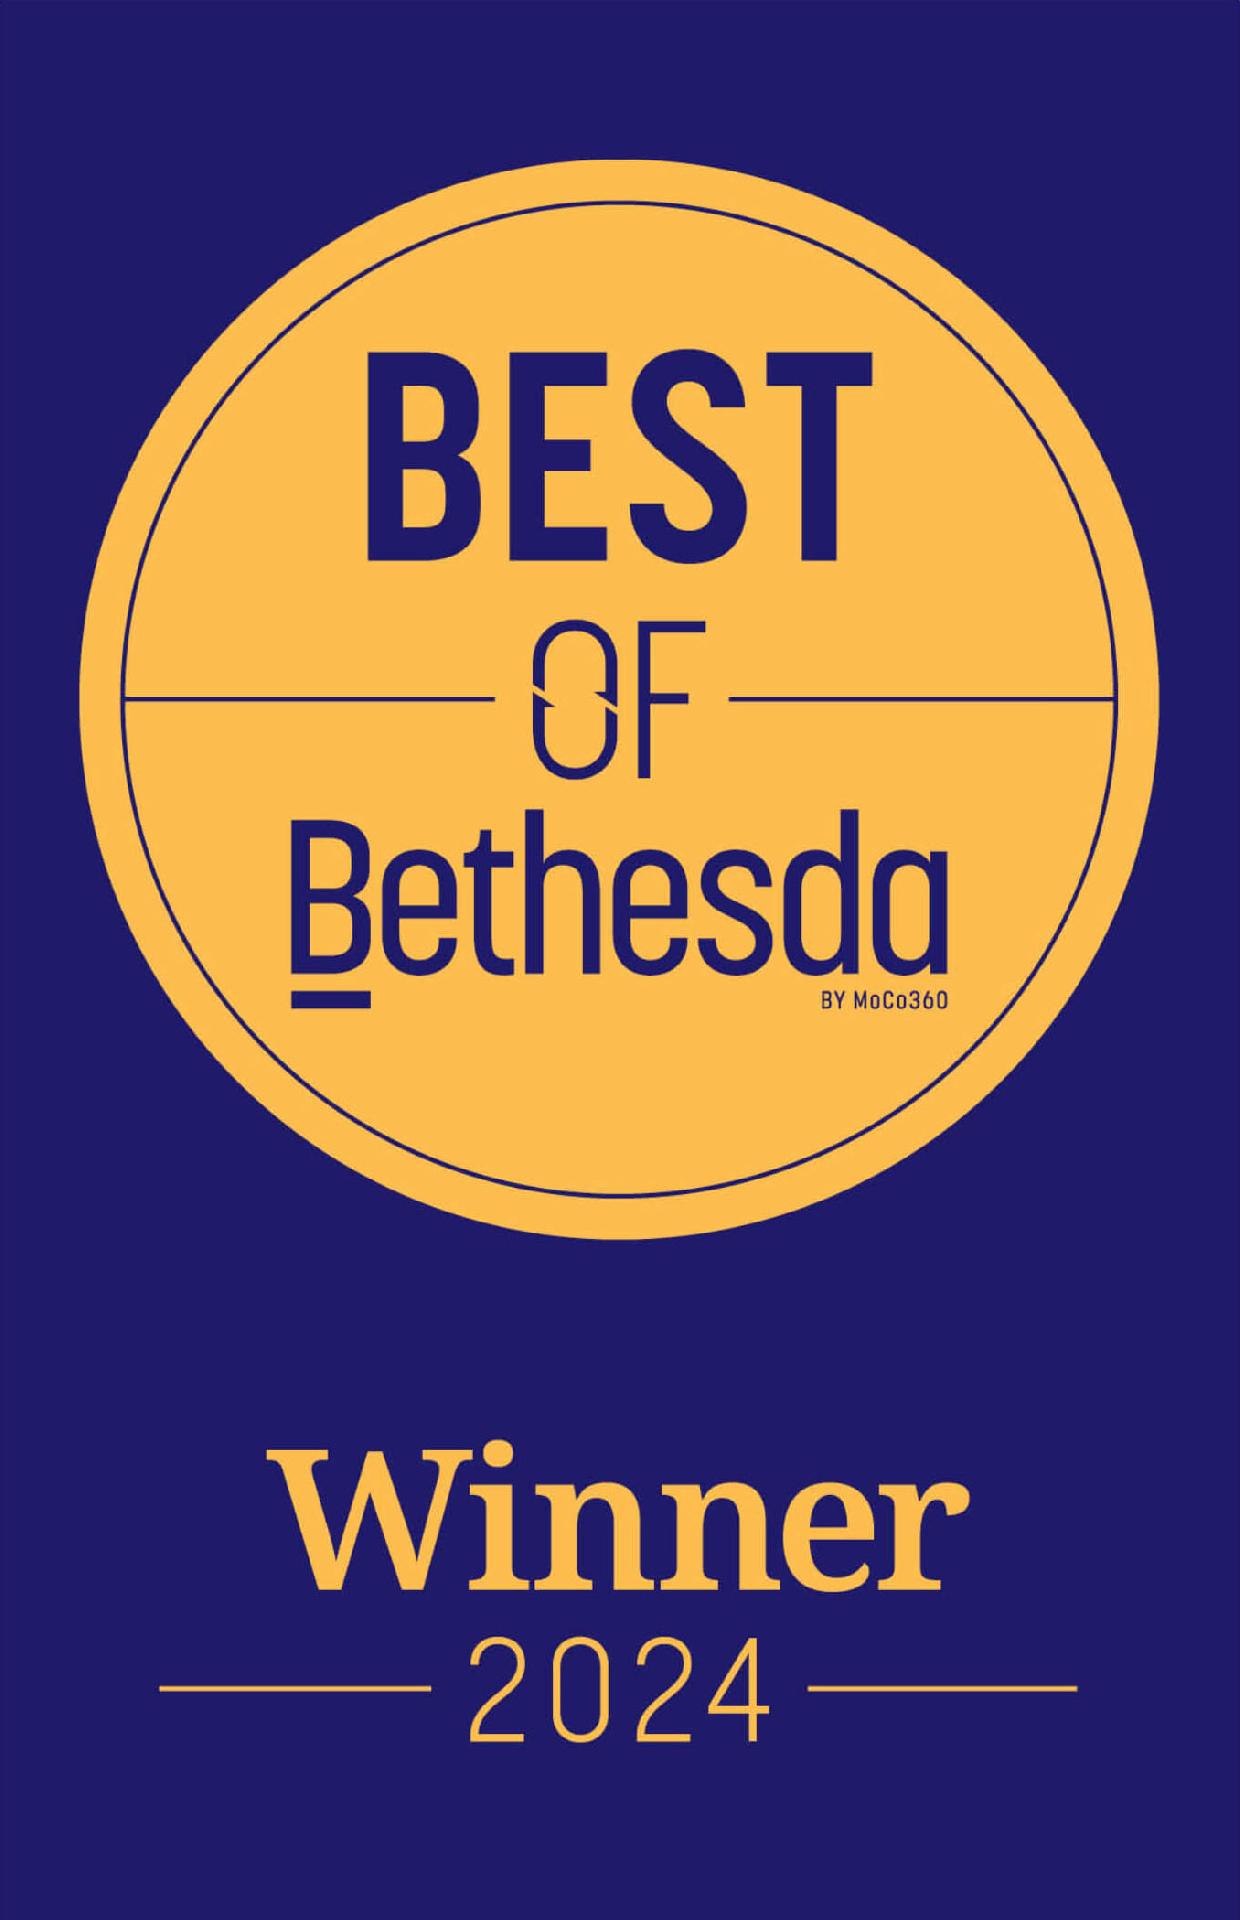 Best of Bethesda Award Recipient, Bethesda Magazine